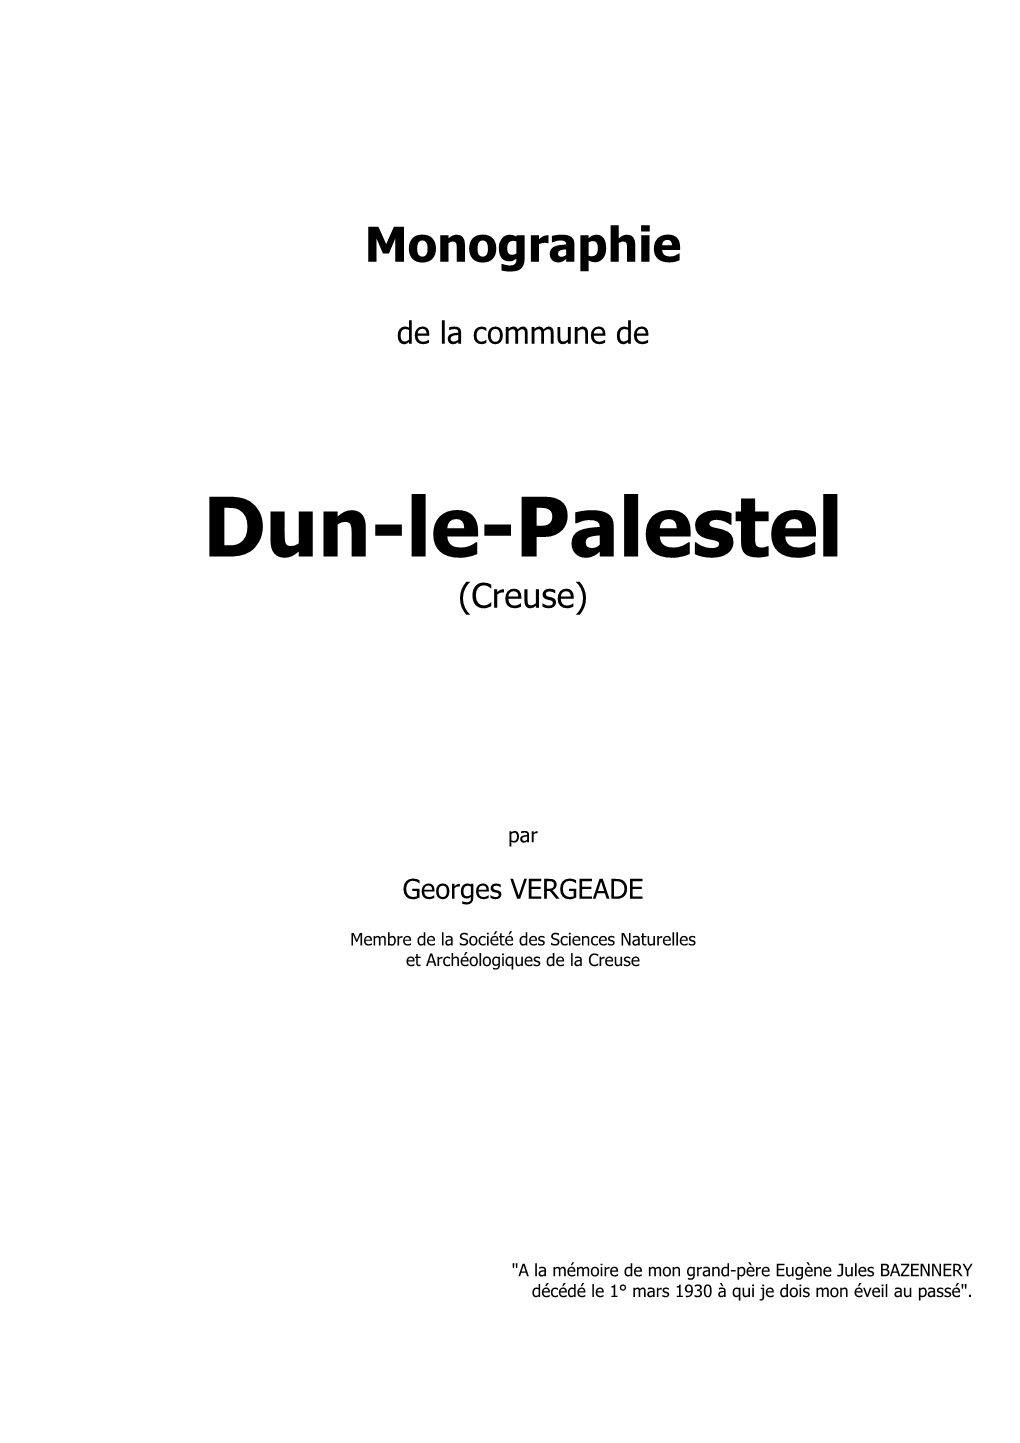 Monographie De La Commune De Dun-Le-Palestel